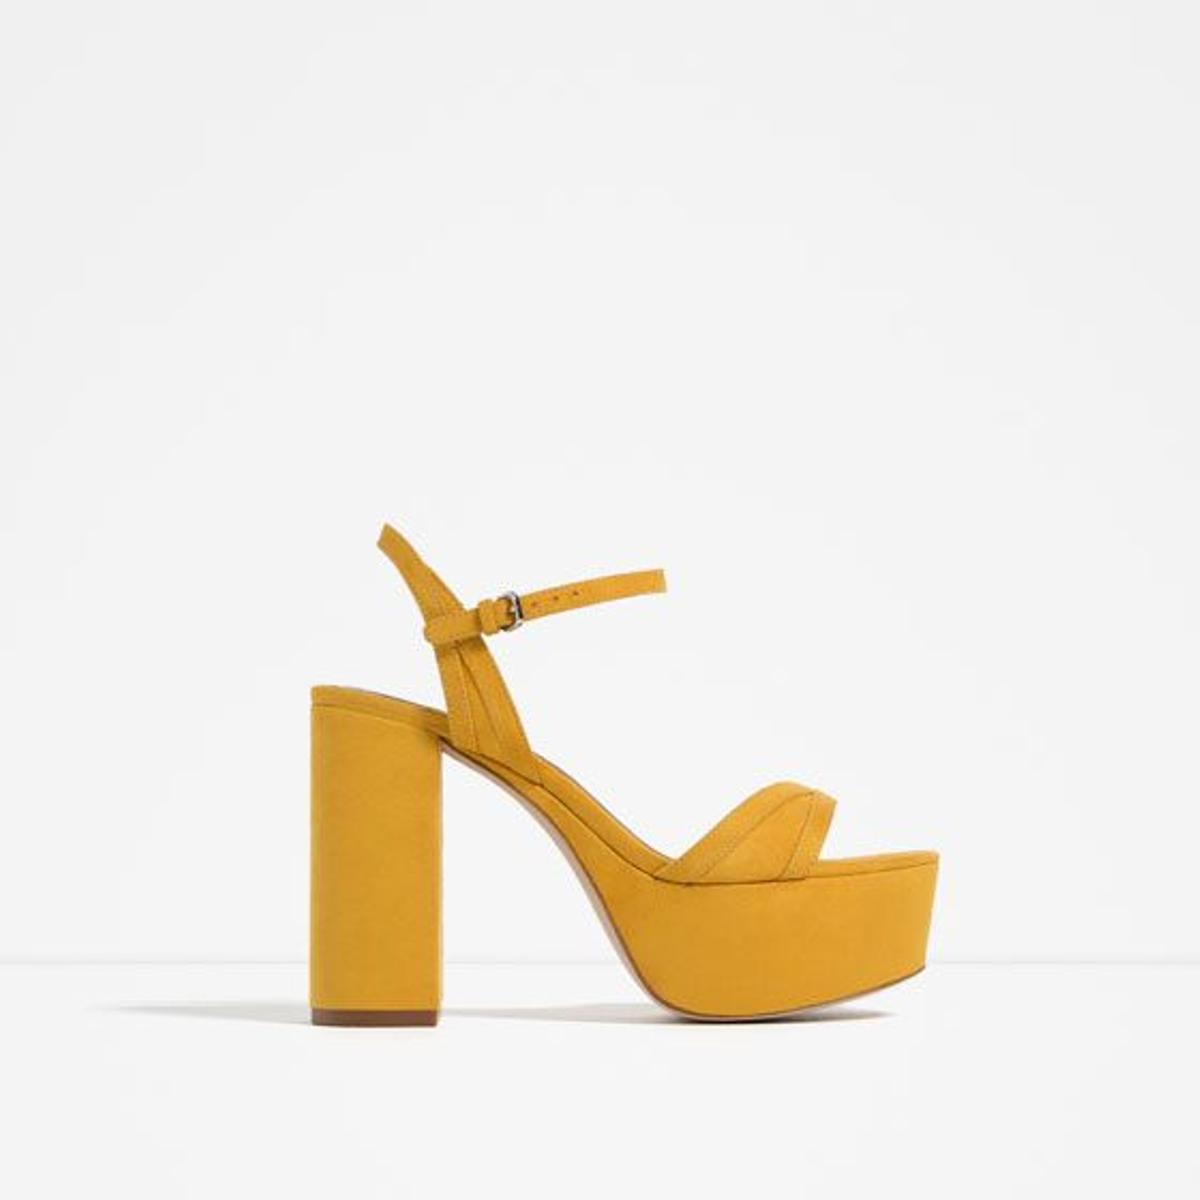 Sandalias con plataforma amarillas de Zara (39,95€)